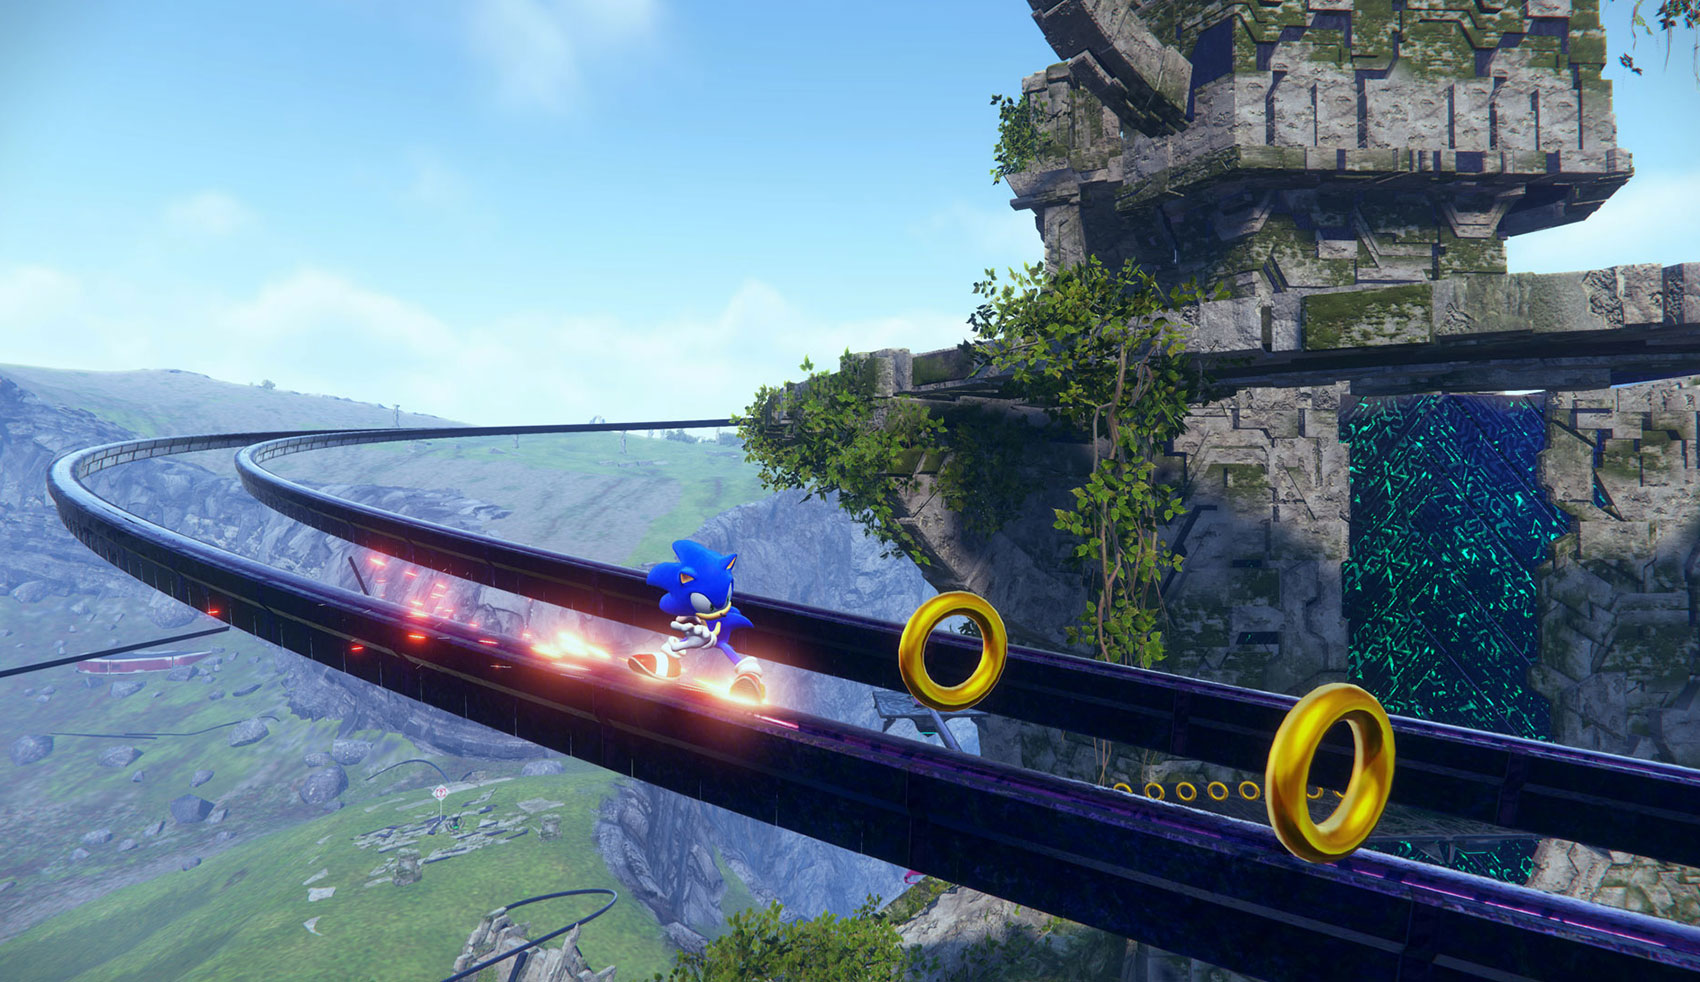 Nova atualização de Sonic Frontiers vai trazer de volta um